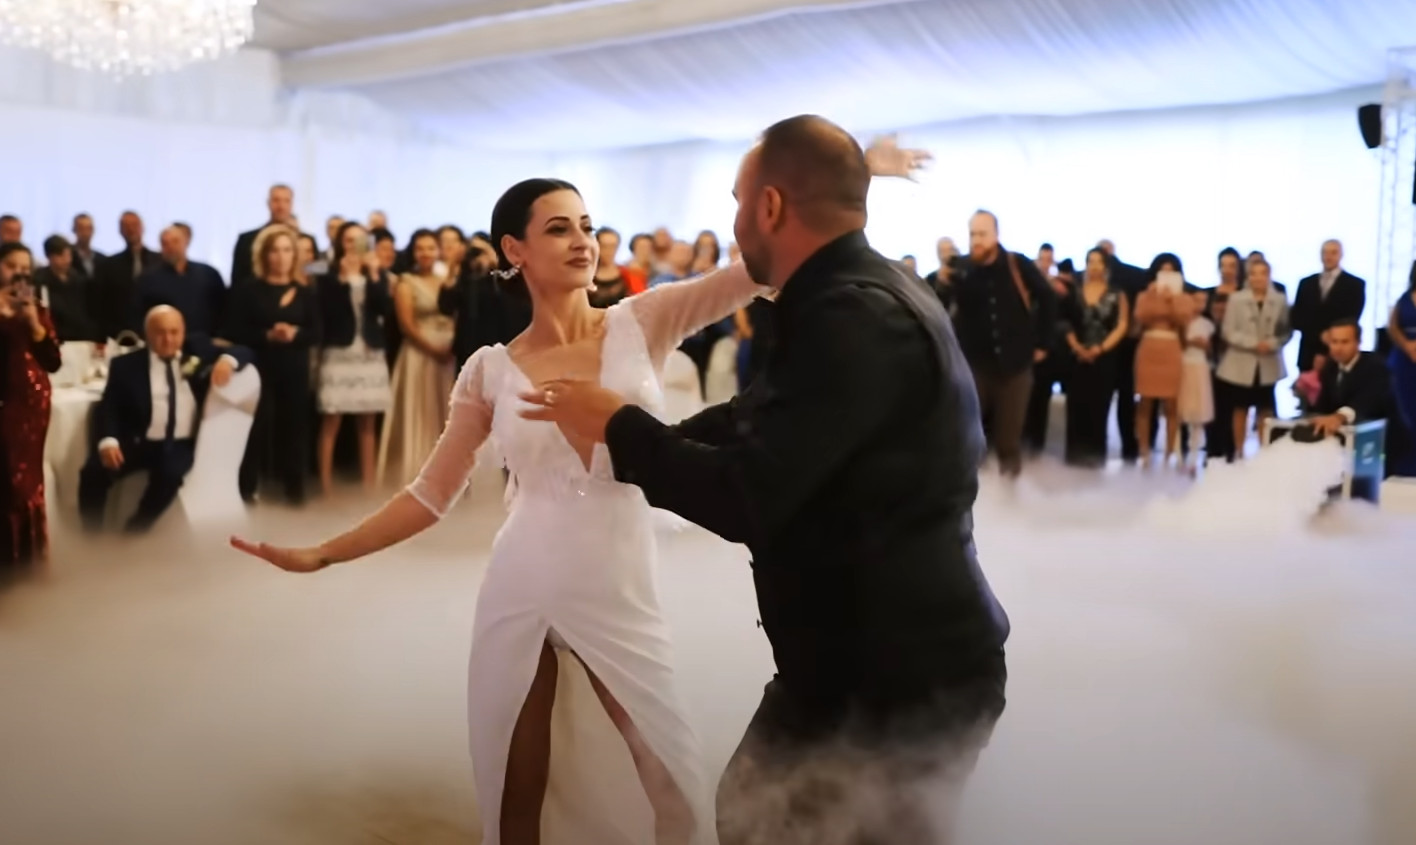 Spektakularny taniec na weselu?! Jeszcze takiego nie widzieliście! | VIDEO